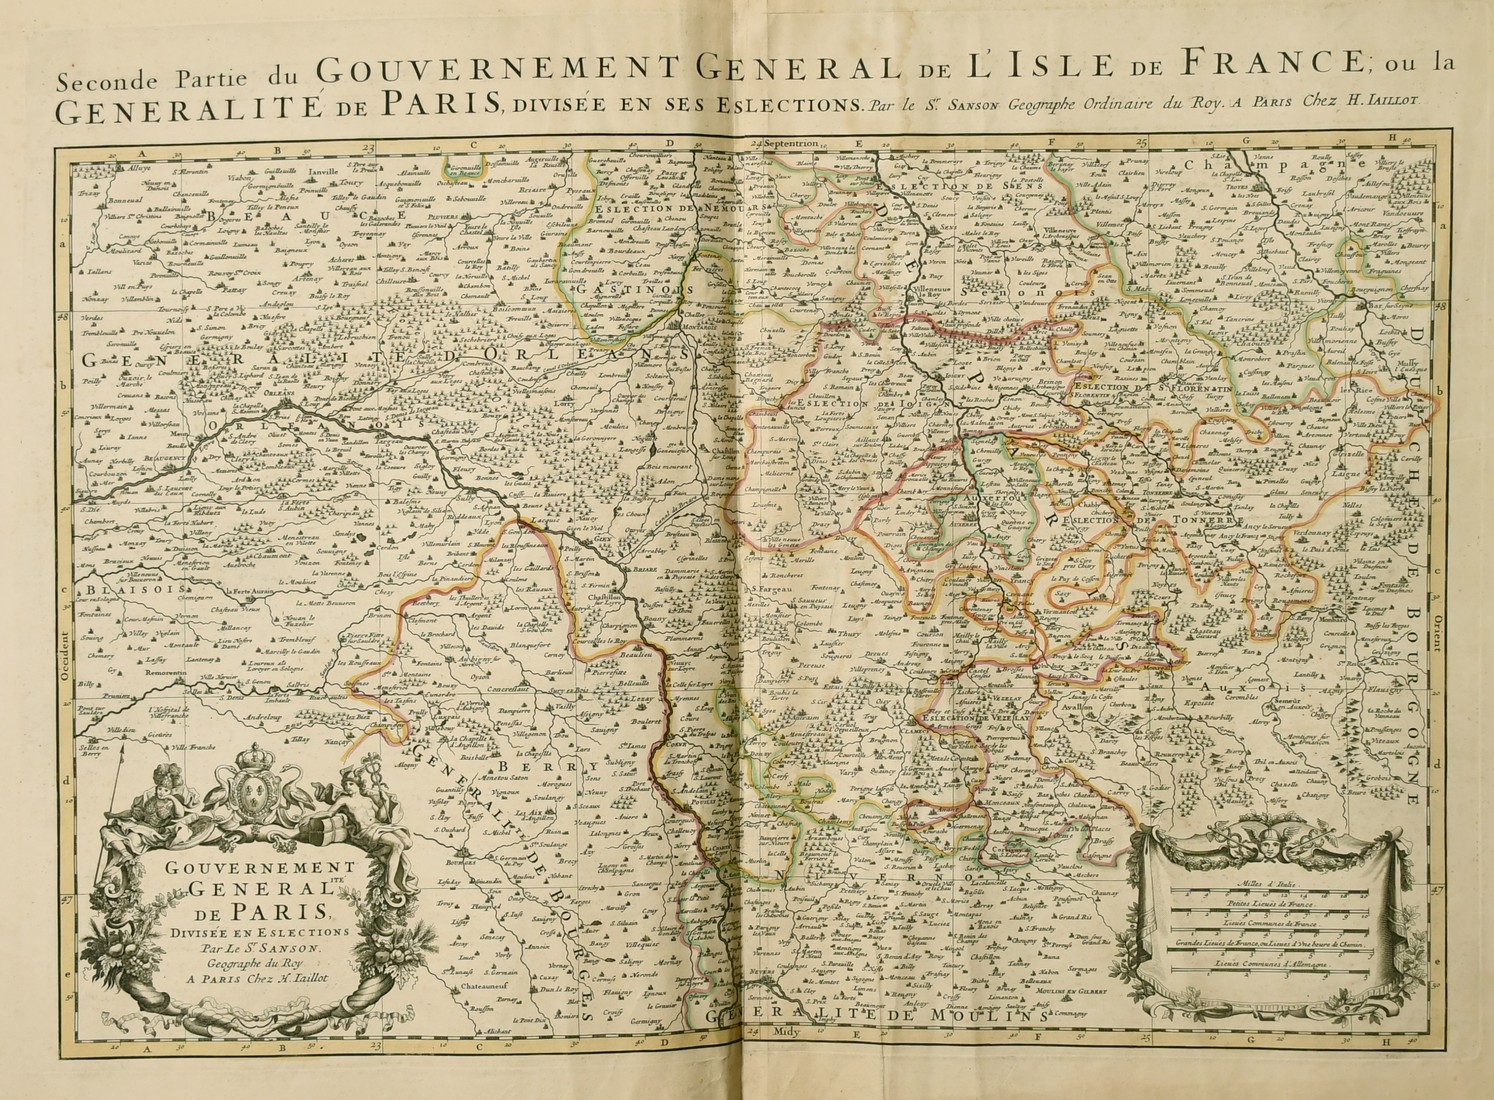 Alexis-Hubert Jaillot, 'Le Gouvernement General de Picardie' and 'Le Gouvernement General de L'